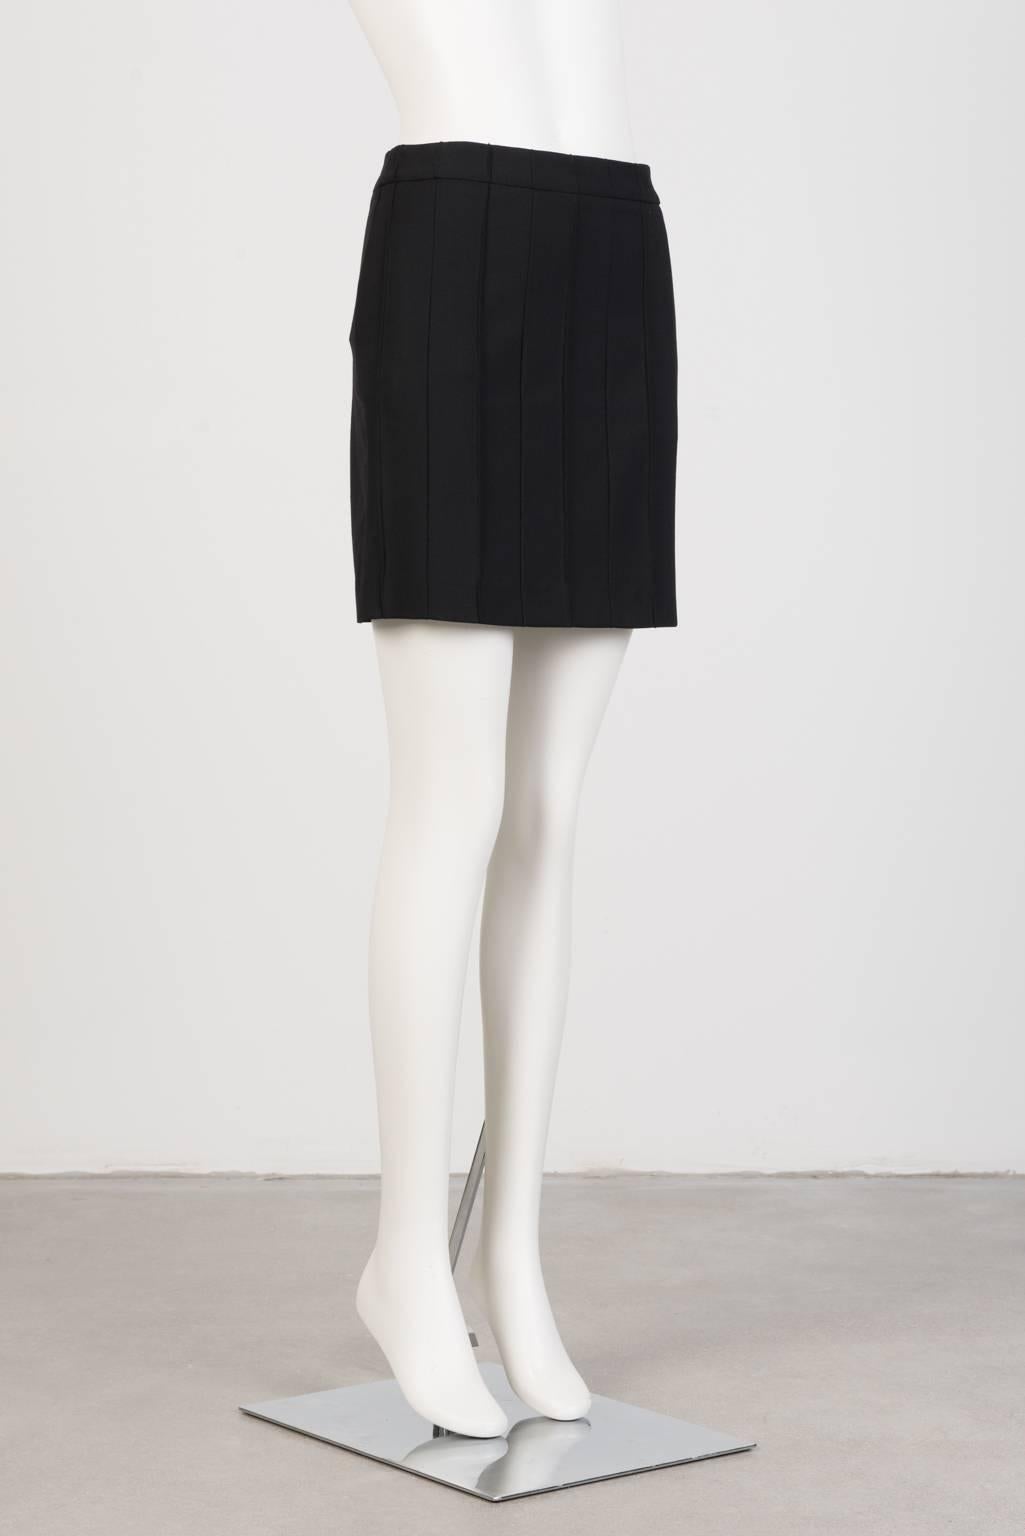 Black Martin Margiela Short Skirt For Sale